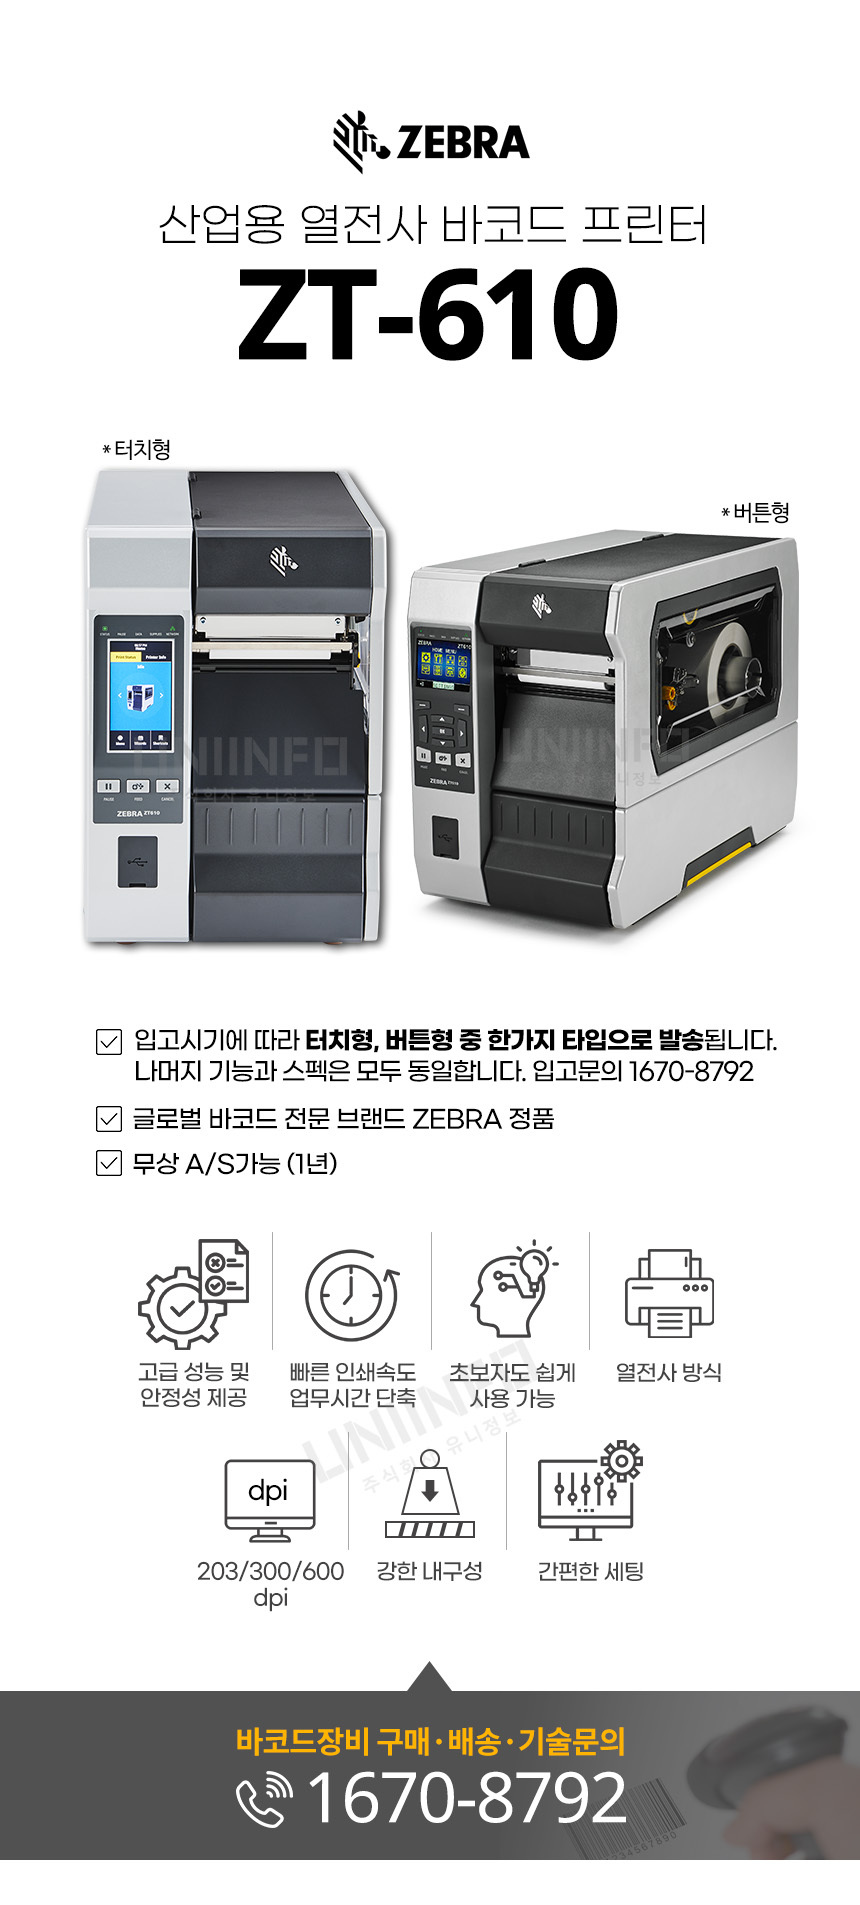 zebra 산업용 열전사 바코드 프린터 zt-610 무상as 가능 고성능 열전사방식 203 300 600dpi 강한 내구성 간편한 세팅 